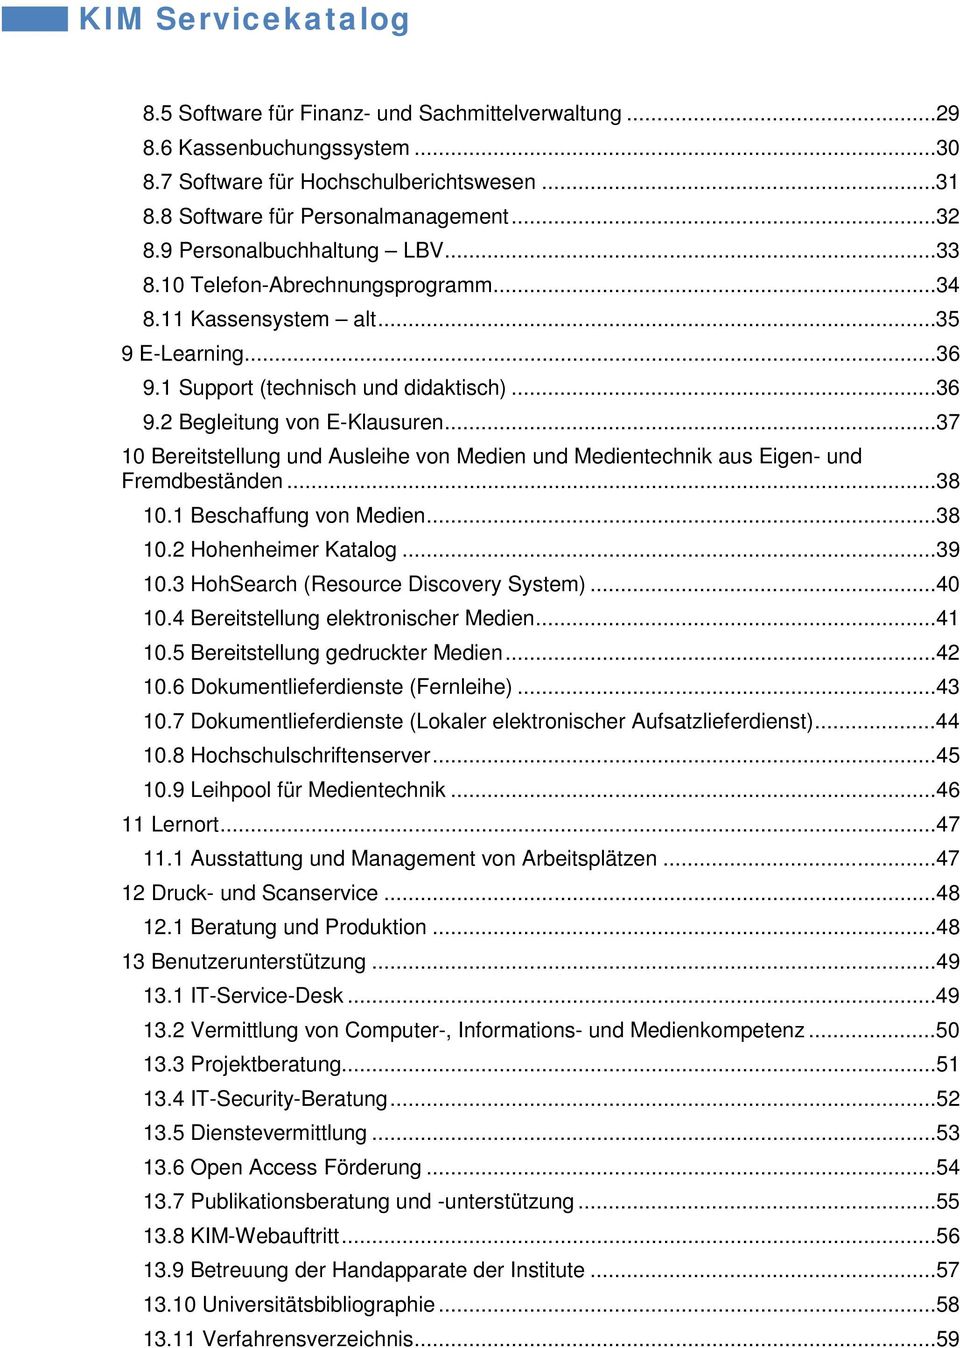 ..37 10 Bereitstellung und Ausleihe von Medien und Medientechnik aus Eigen- und Fremdbeständen...38 10.1 Beschaffung von Medien...38 10.2 Hohenheimer Katalog...39 10.